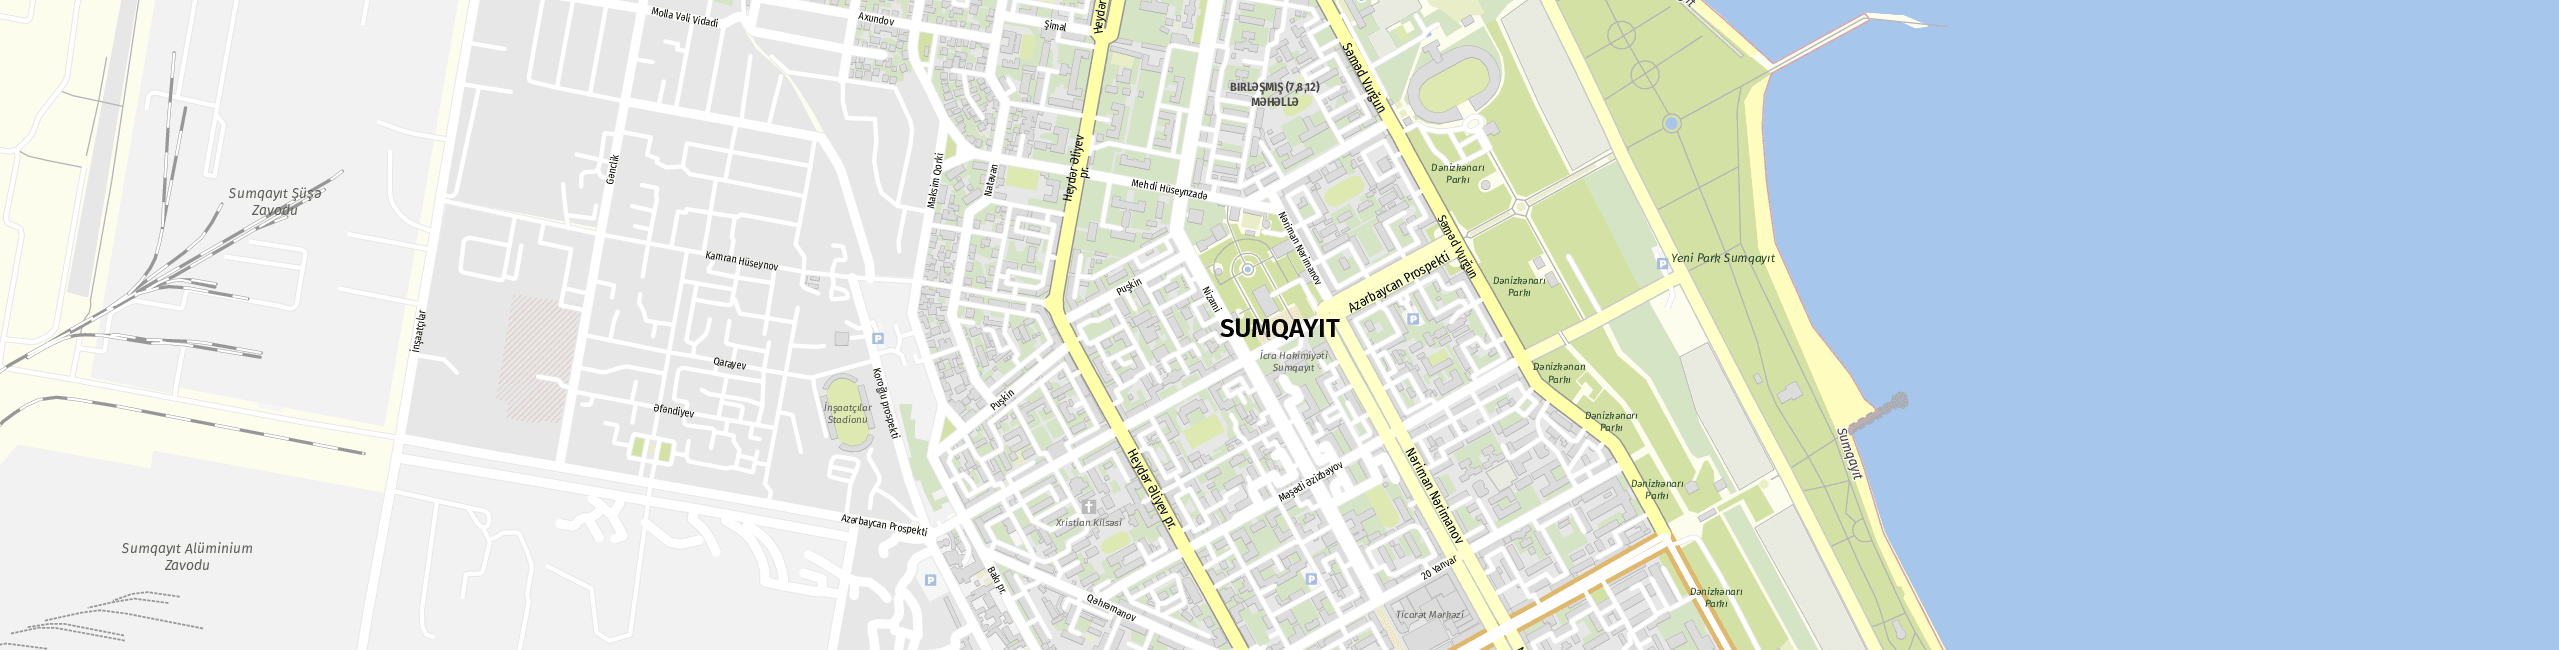 Stadtplan Sumqayit zum Downloaden.